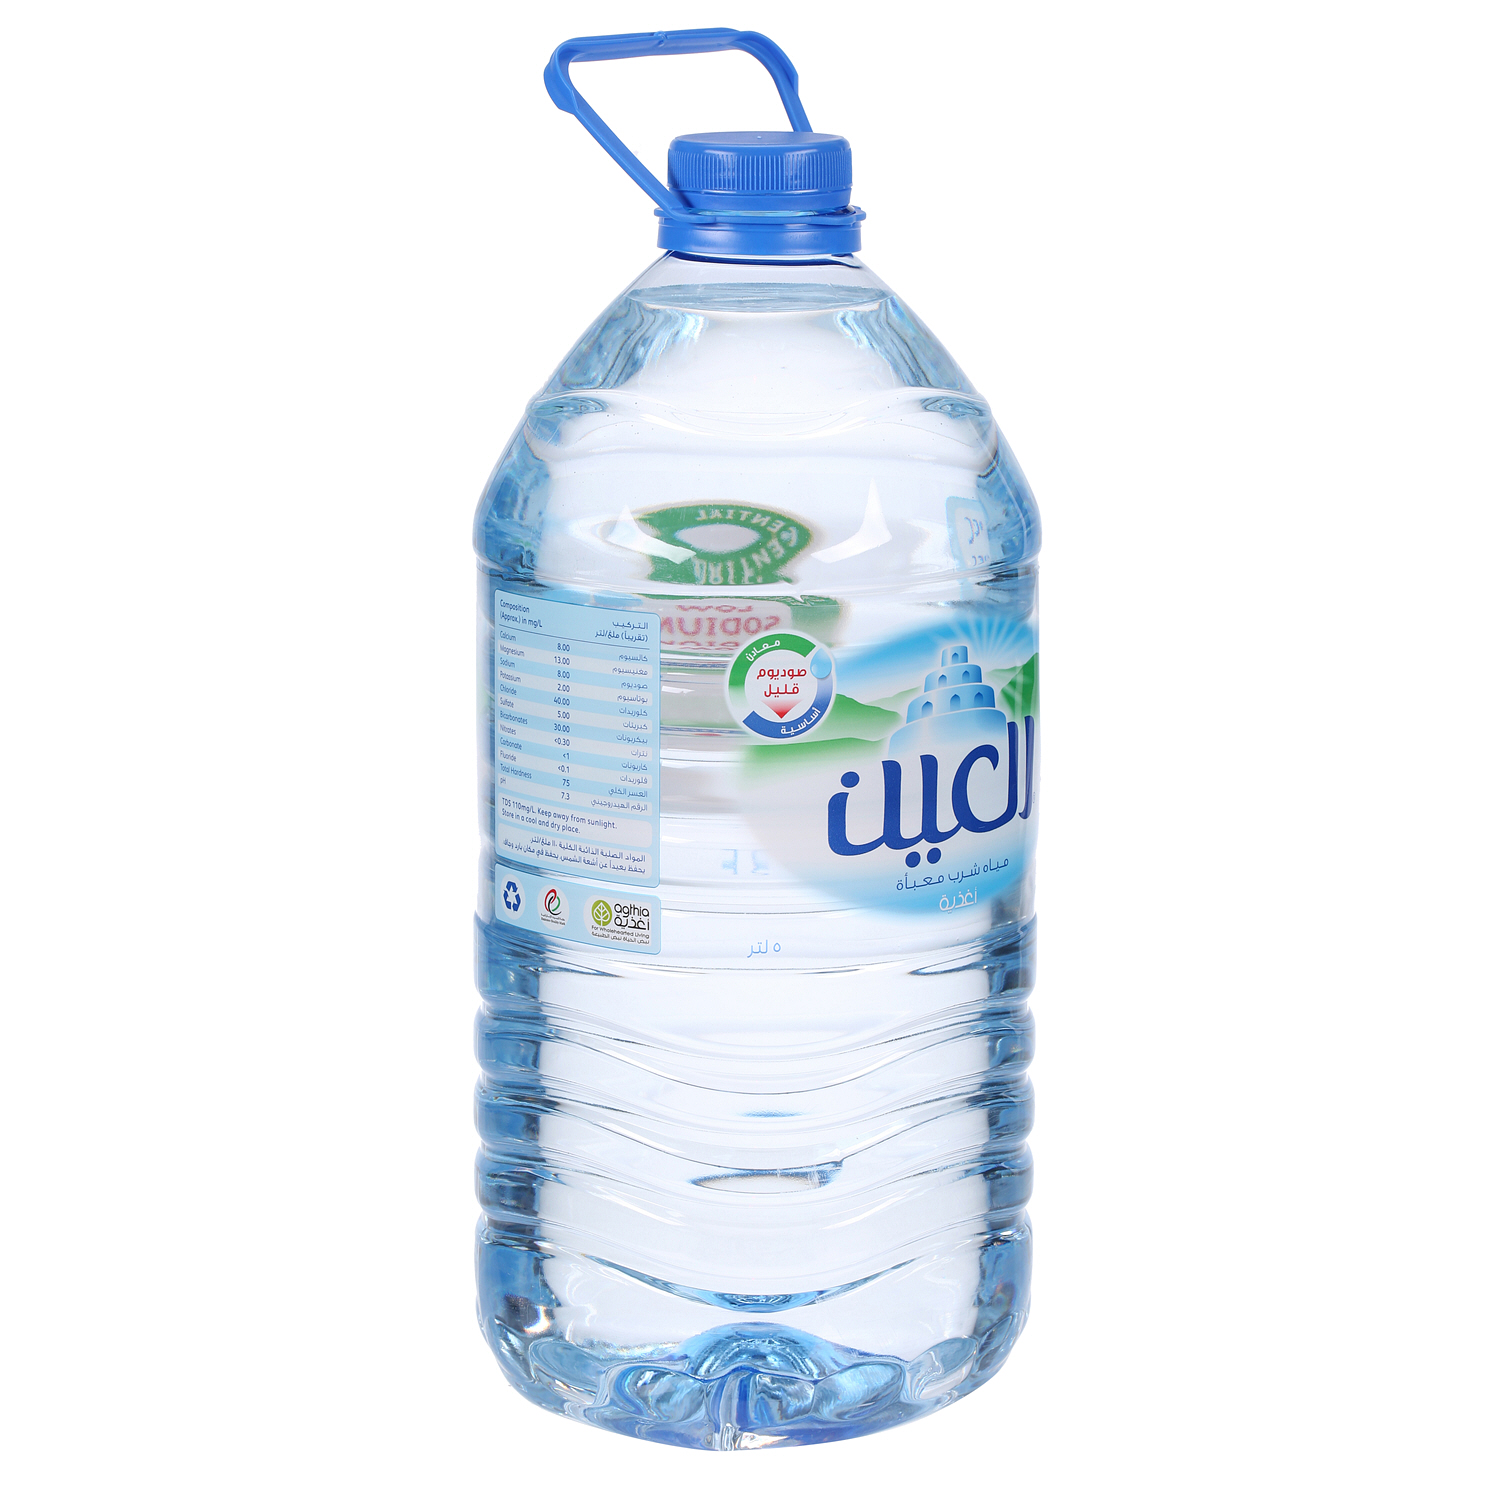 Al Ain Water 5 L